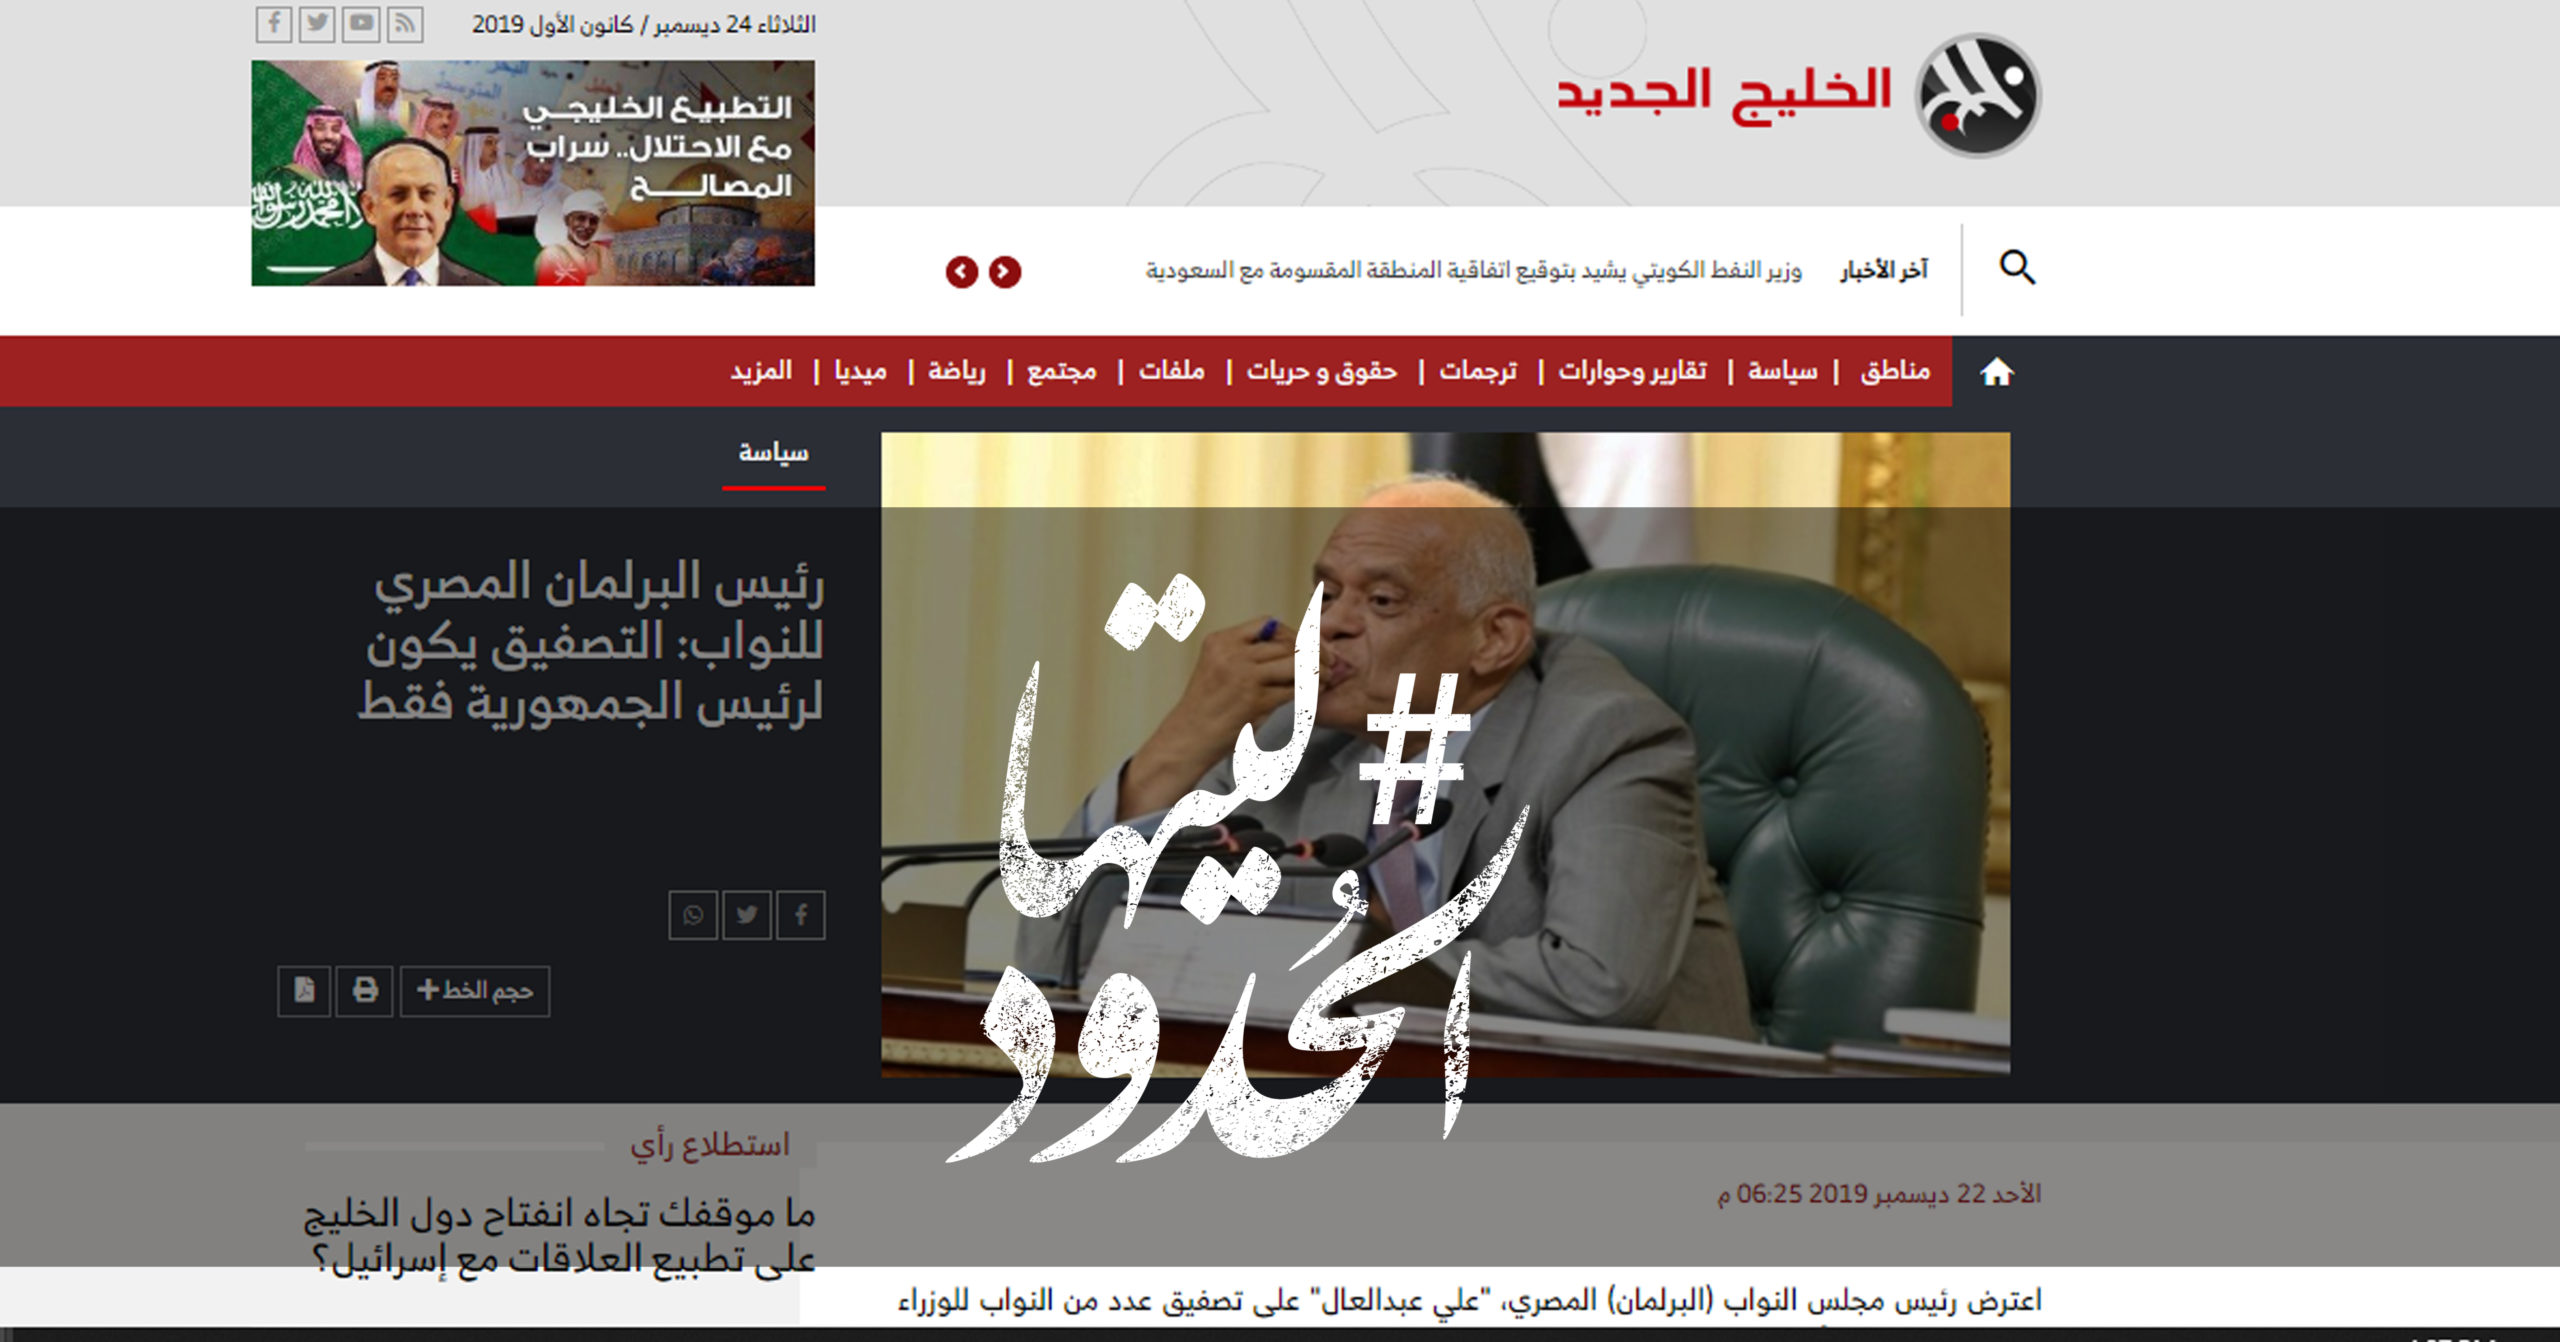 صورة رئيس البرلمان المصري للنواب: التصفيق يكون لرئيس الجمهورية فقط